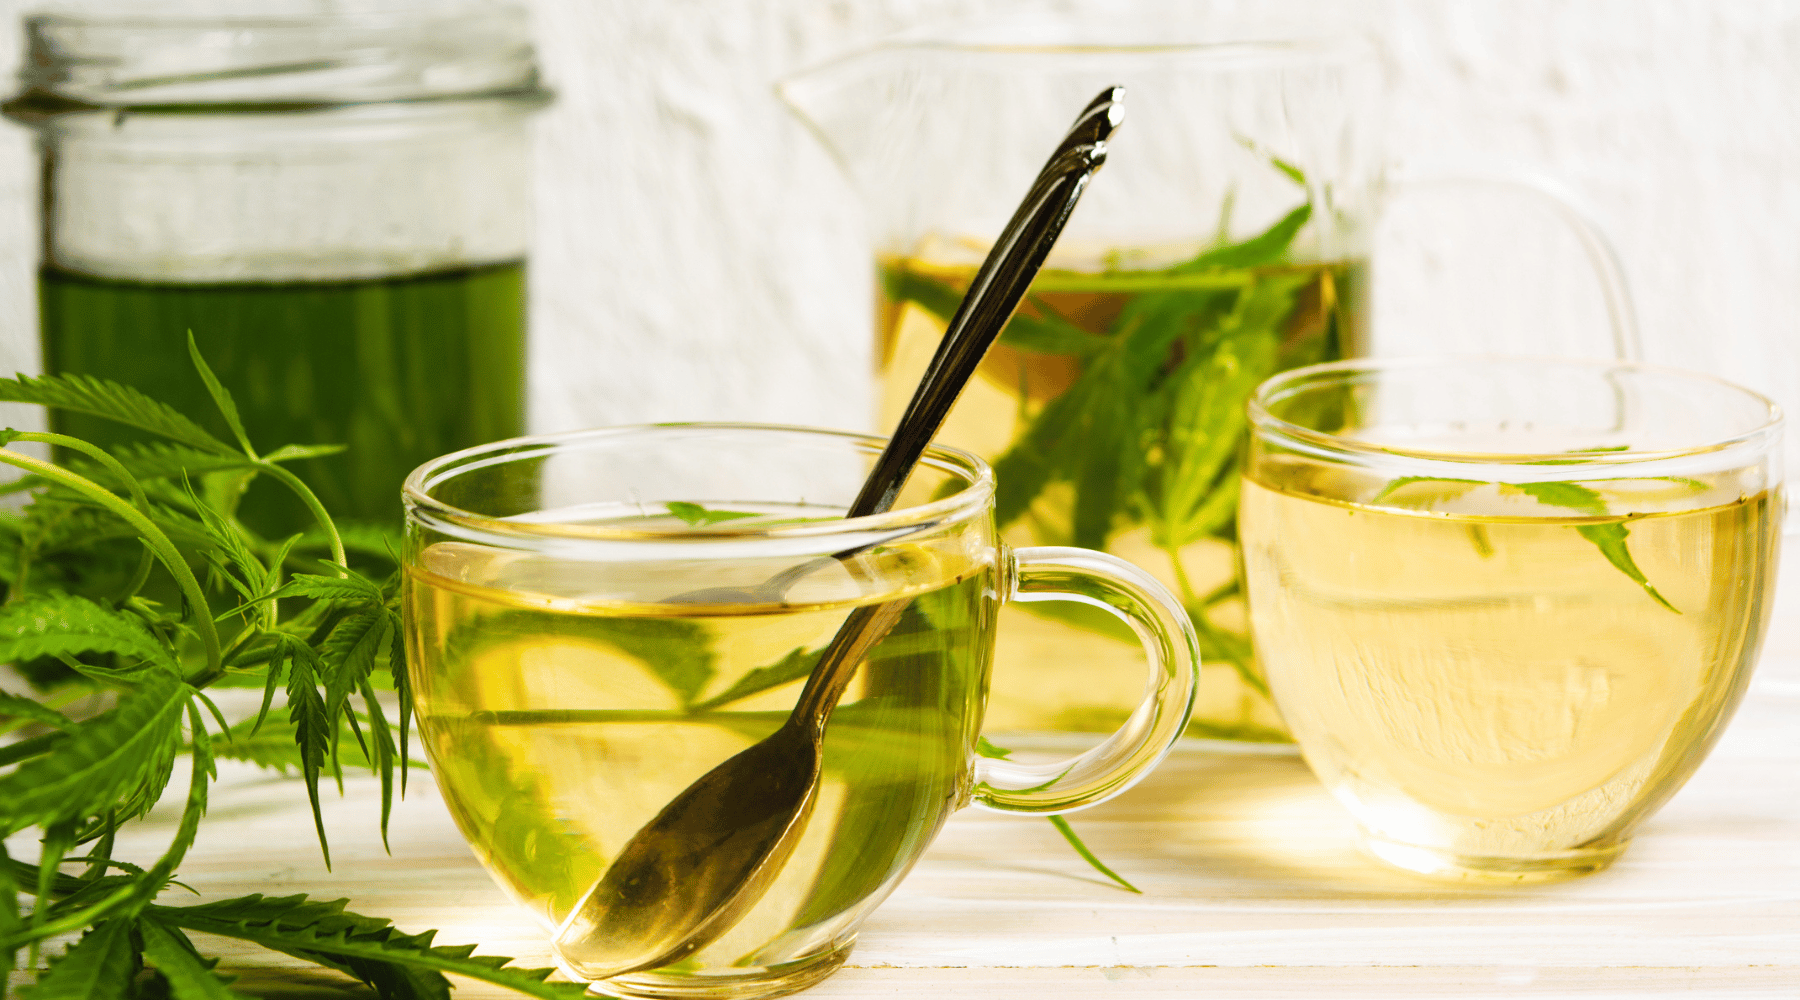 Image showcasing tea and how to make weed tea